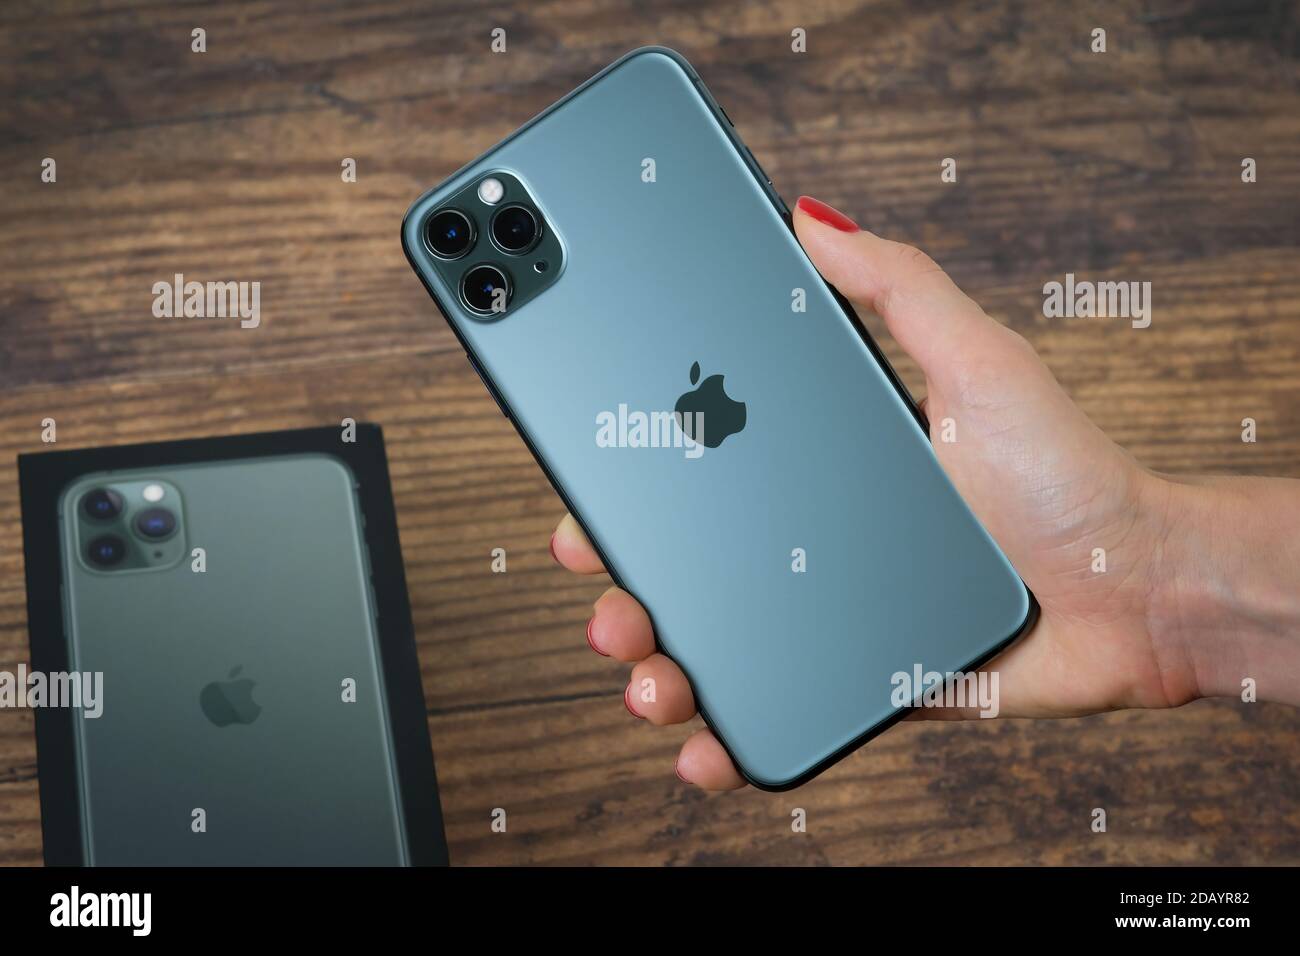 Iphone 11 pro max mitternachtsgrün -Fotos und -Bildmaterial in hoher  Auflösung – Alamy